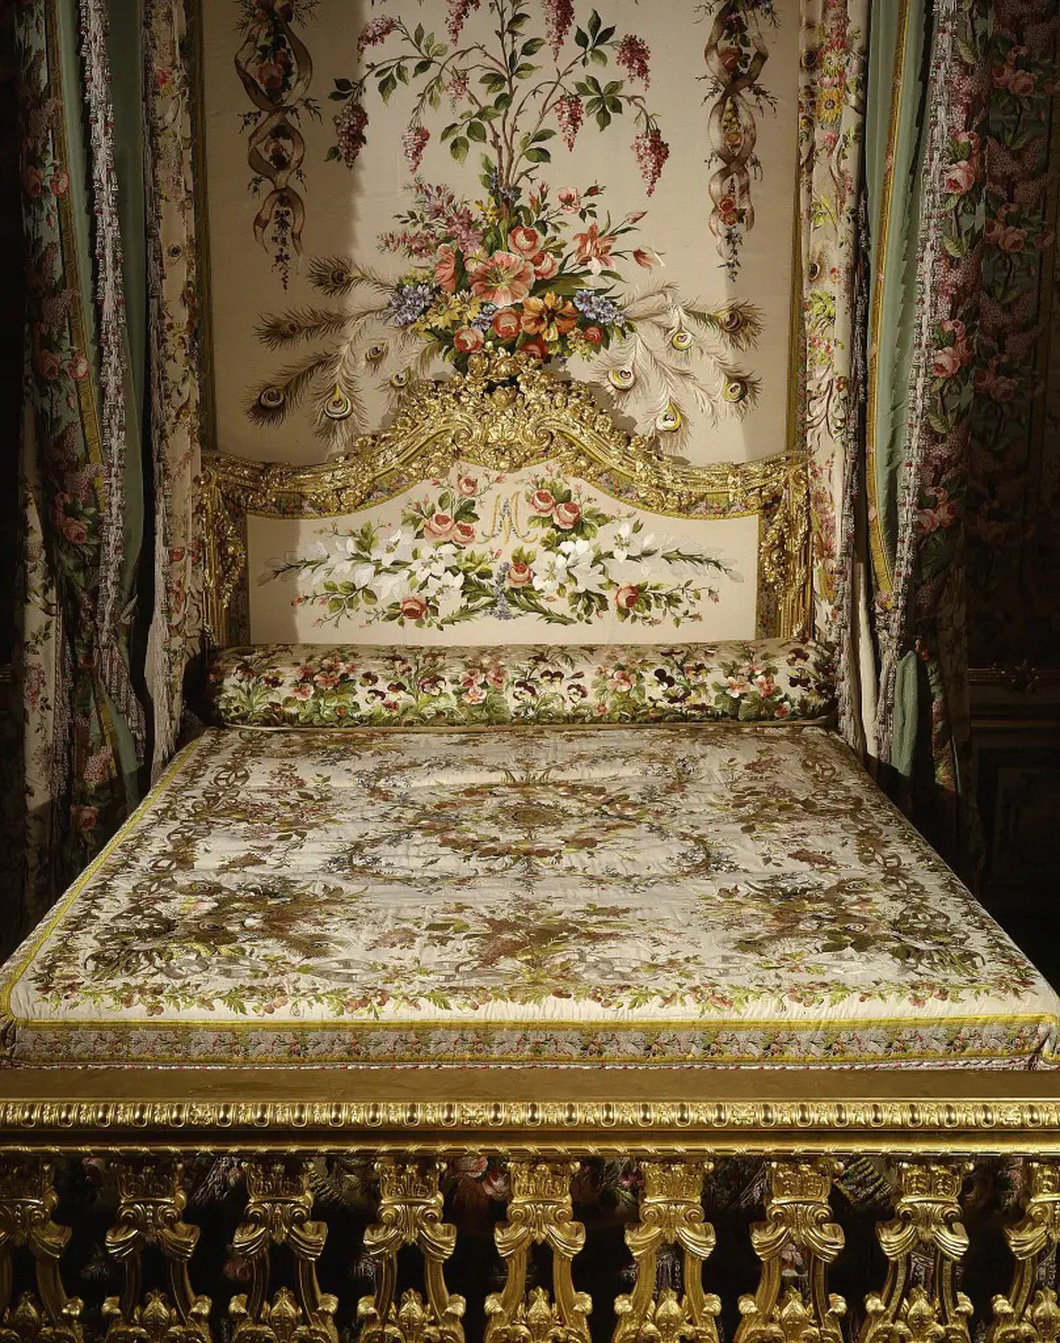 Chiêm ngưỡng căn hộ bí ẩn của hoàng hậu Pháp cuối cùng Marie Antoinette - Ảnh 4.